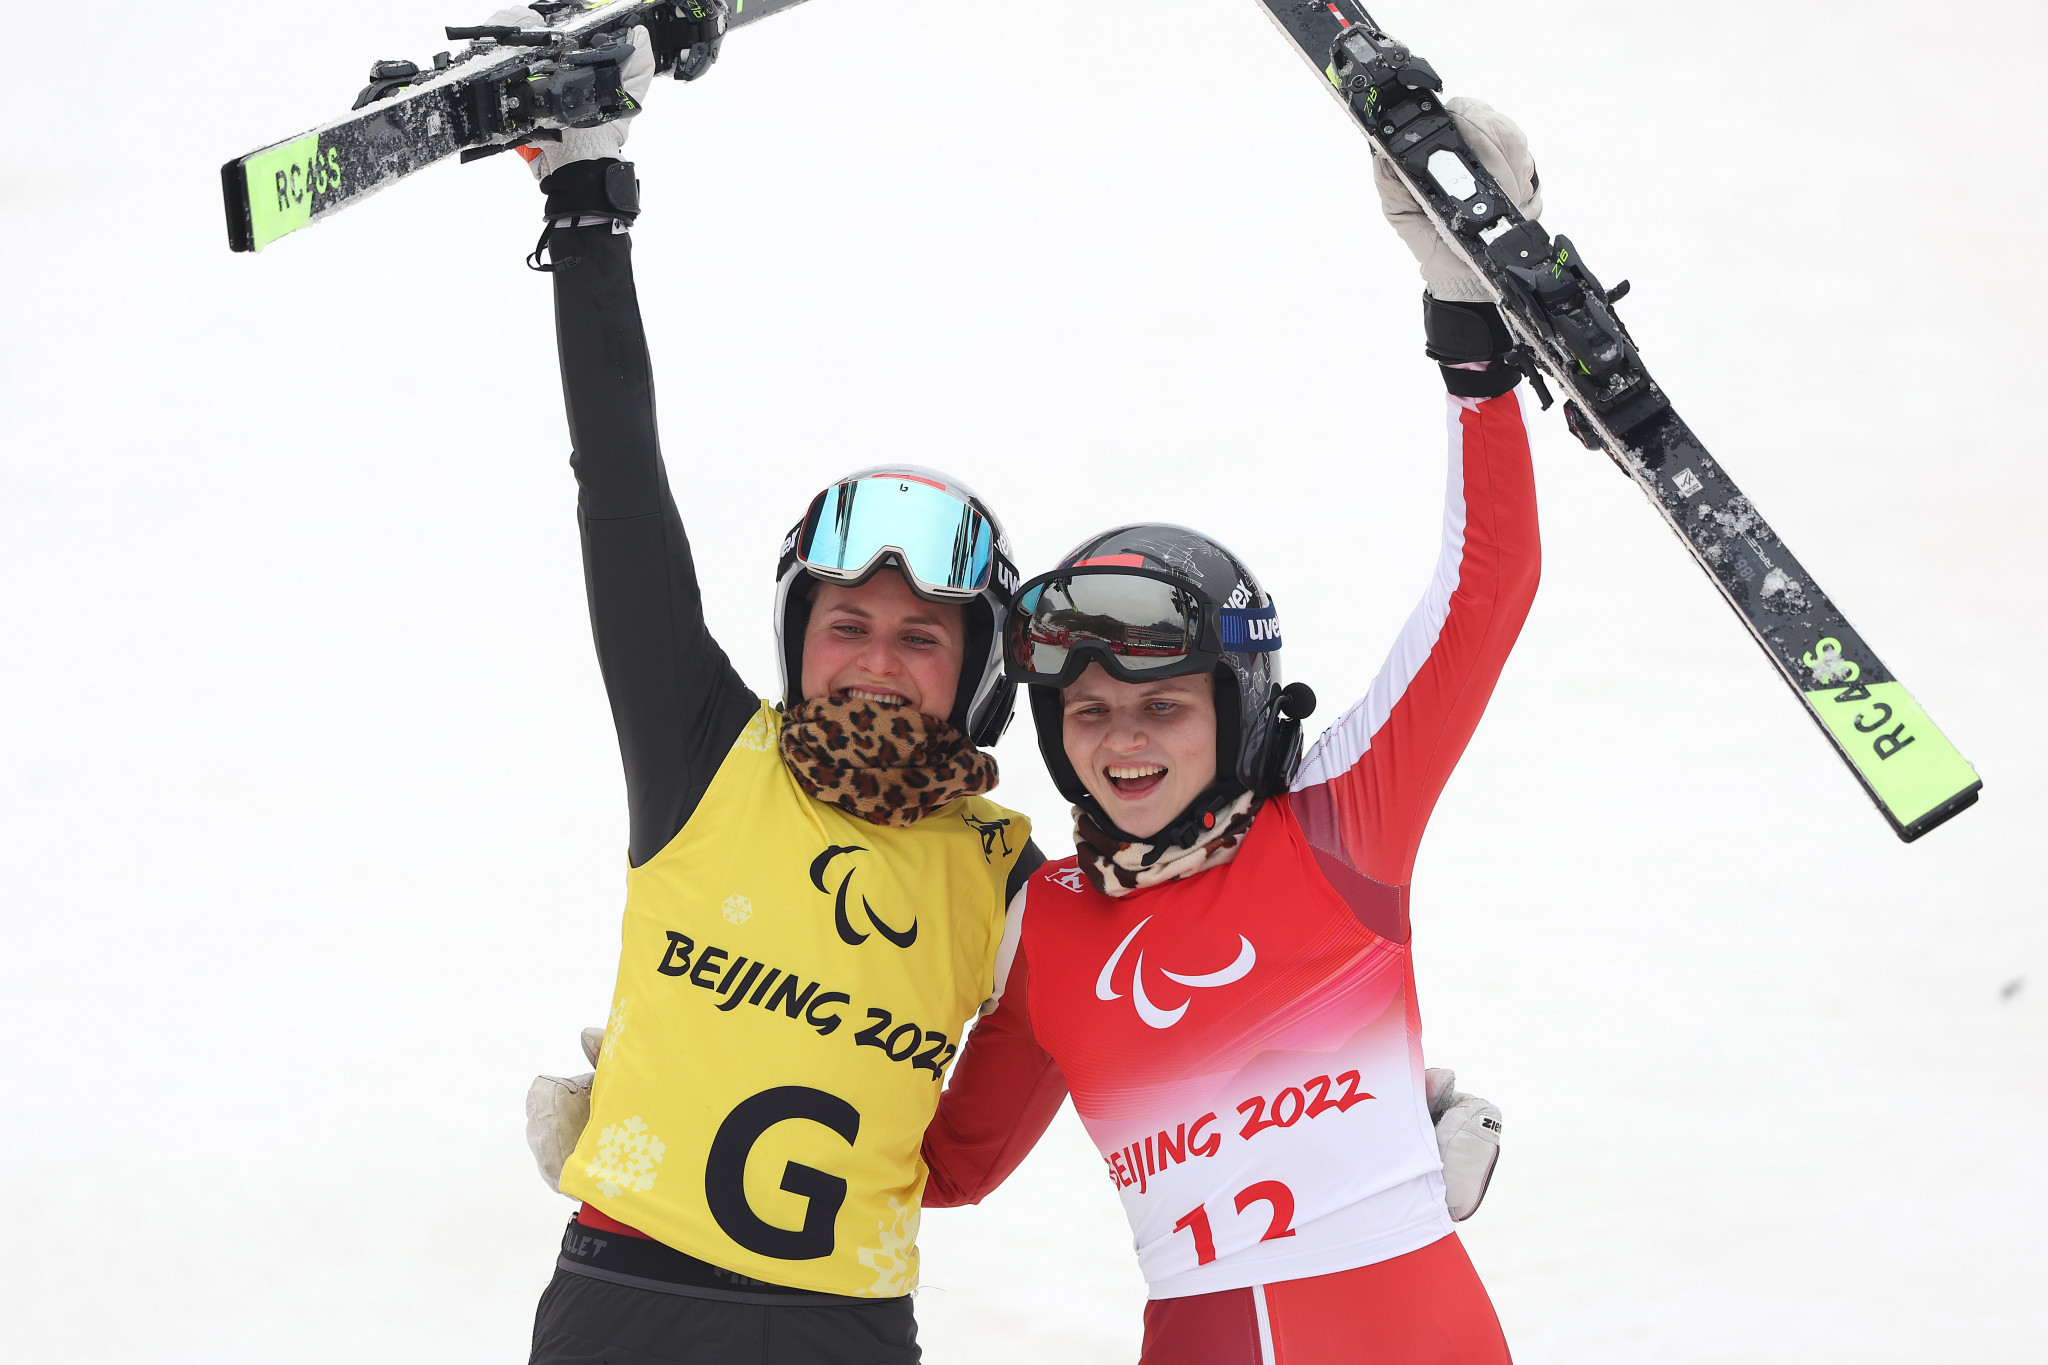 Austrian Paralympians receive medal awards after Beijing 2022 success